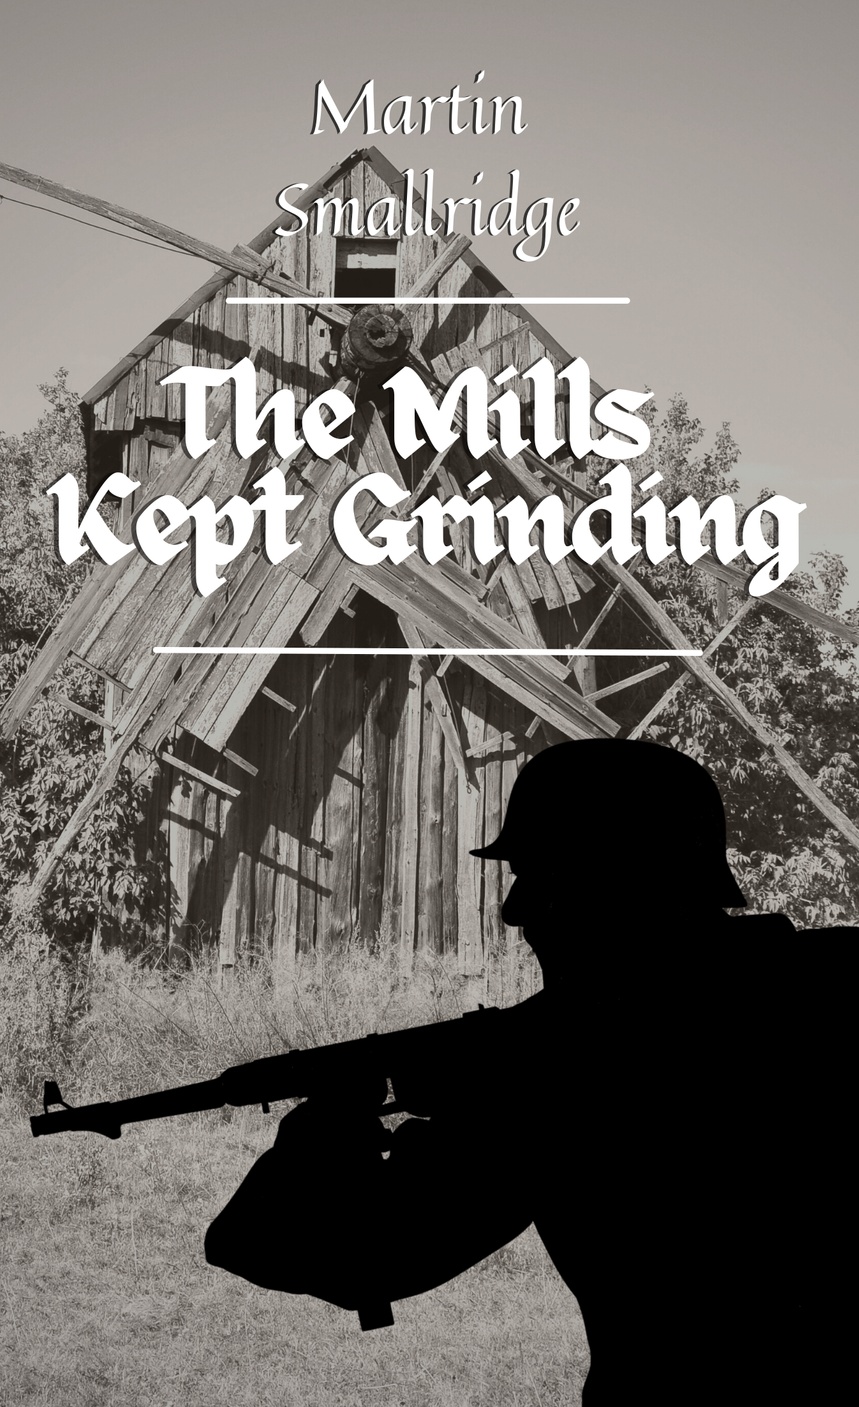 Okładka książki "The Mills Kept Grinding", autor Maricn Małek